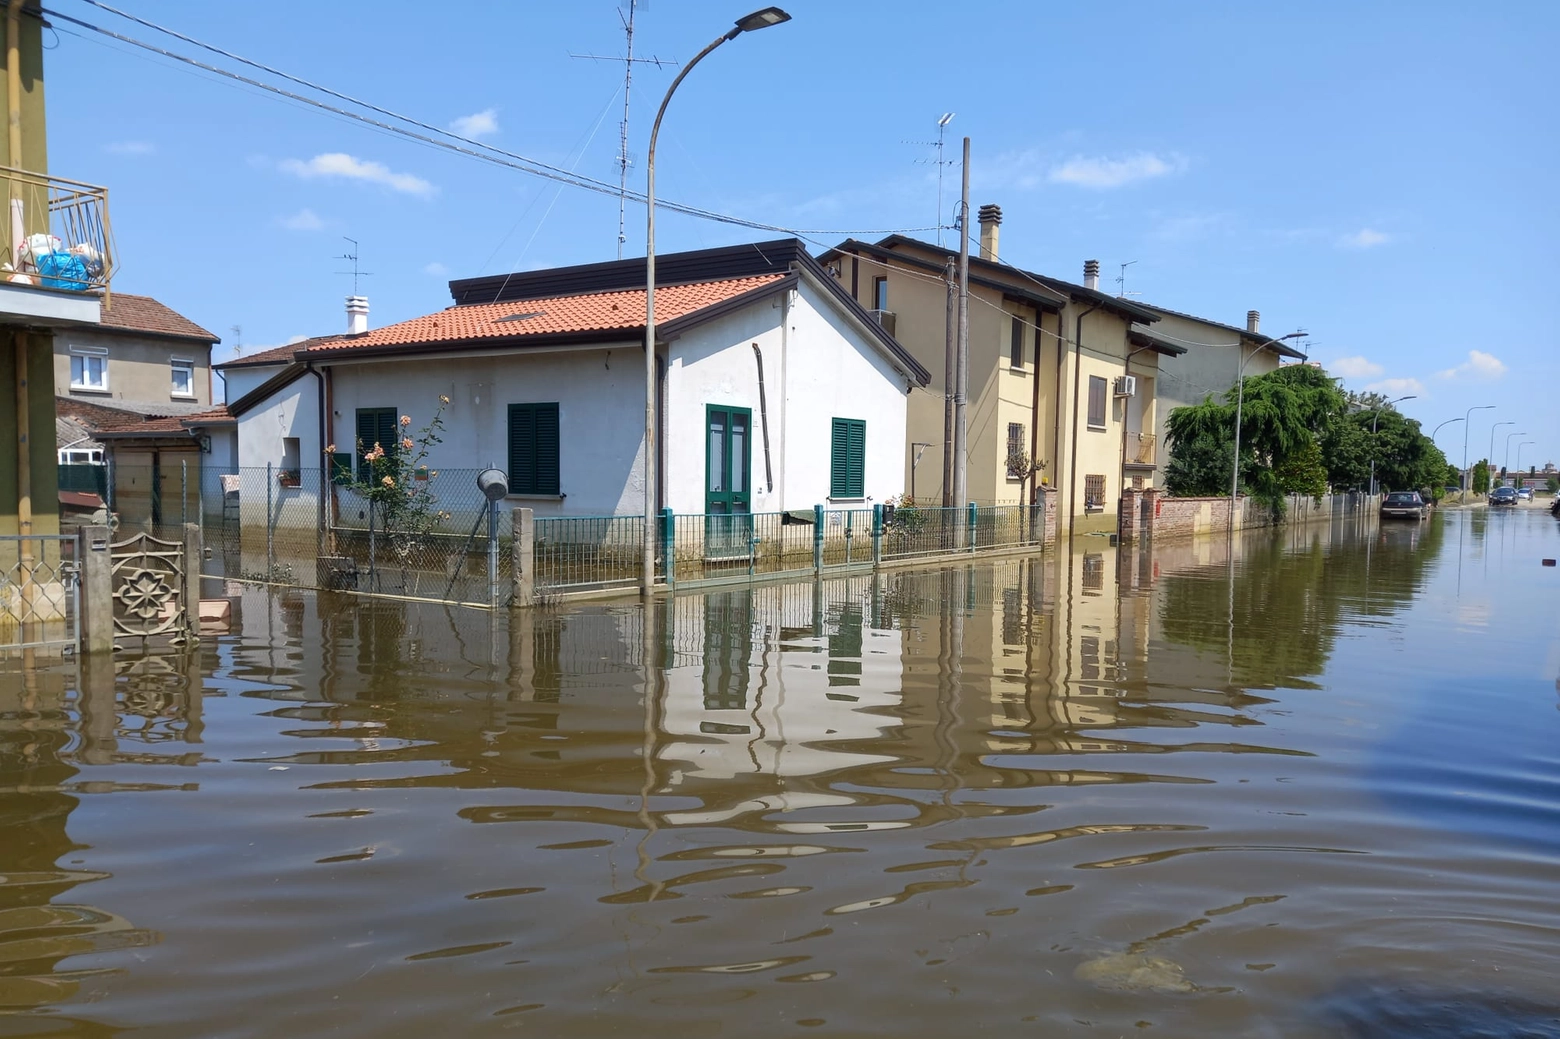 Una delle immagini di Conselice (Ravenna), tra le zone più colpite dall'alluvione del 16 maggio scorso